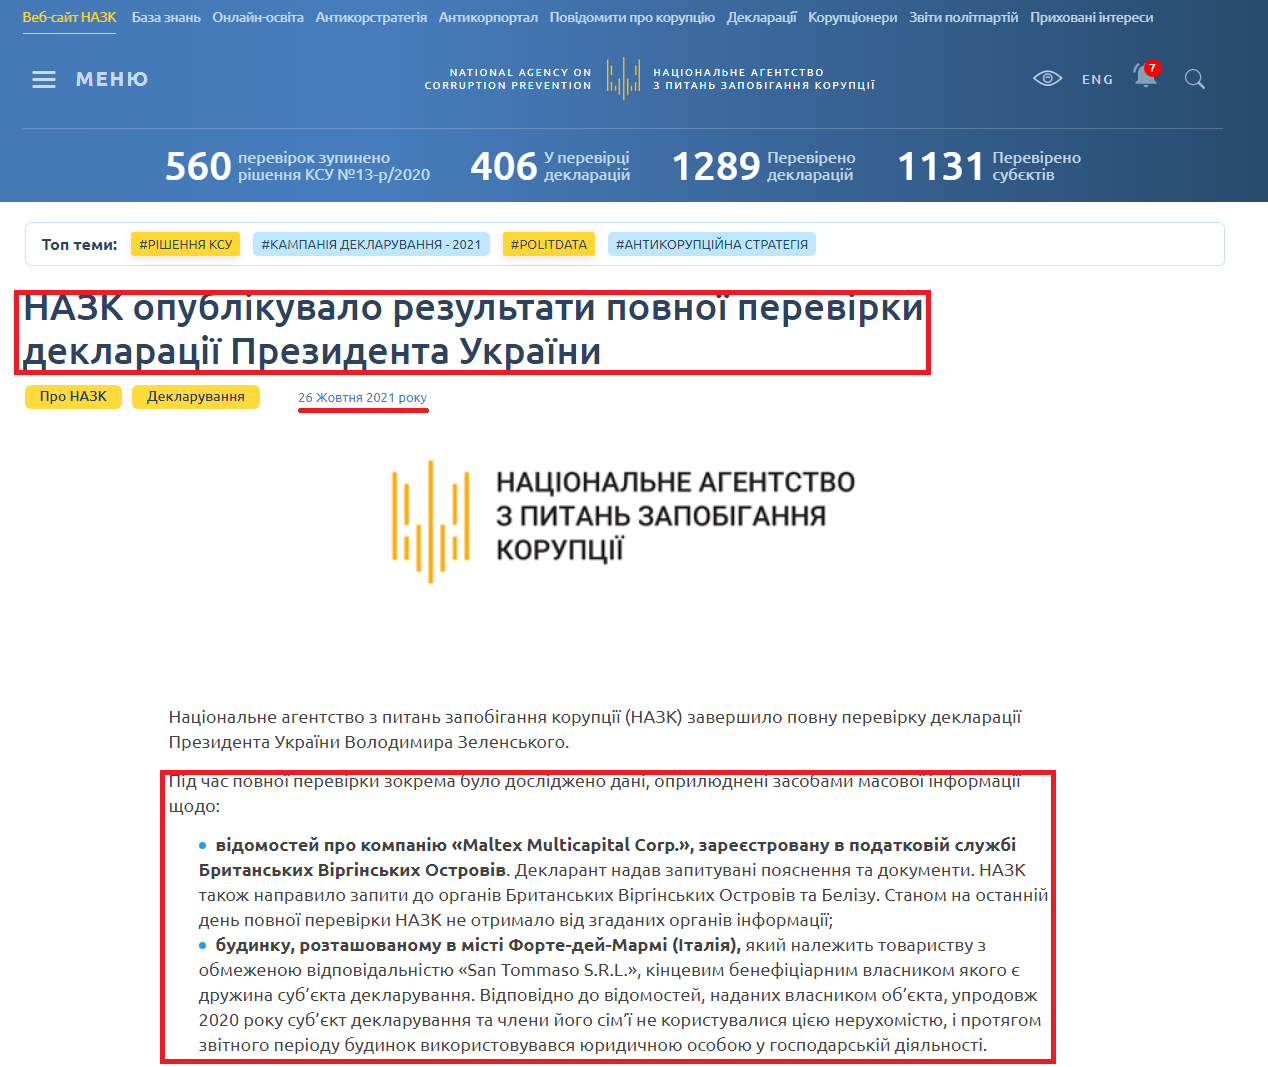 https://nazk.gov.ua/uk/novyny/nazk-opublikuvalo-rezultaty-povnoyi-perevirky-deklaratsiyi-prezydenta-ukrayiny/